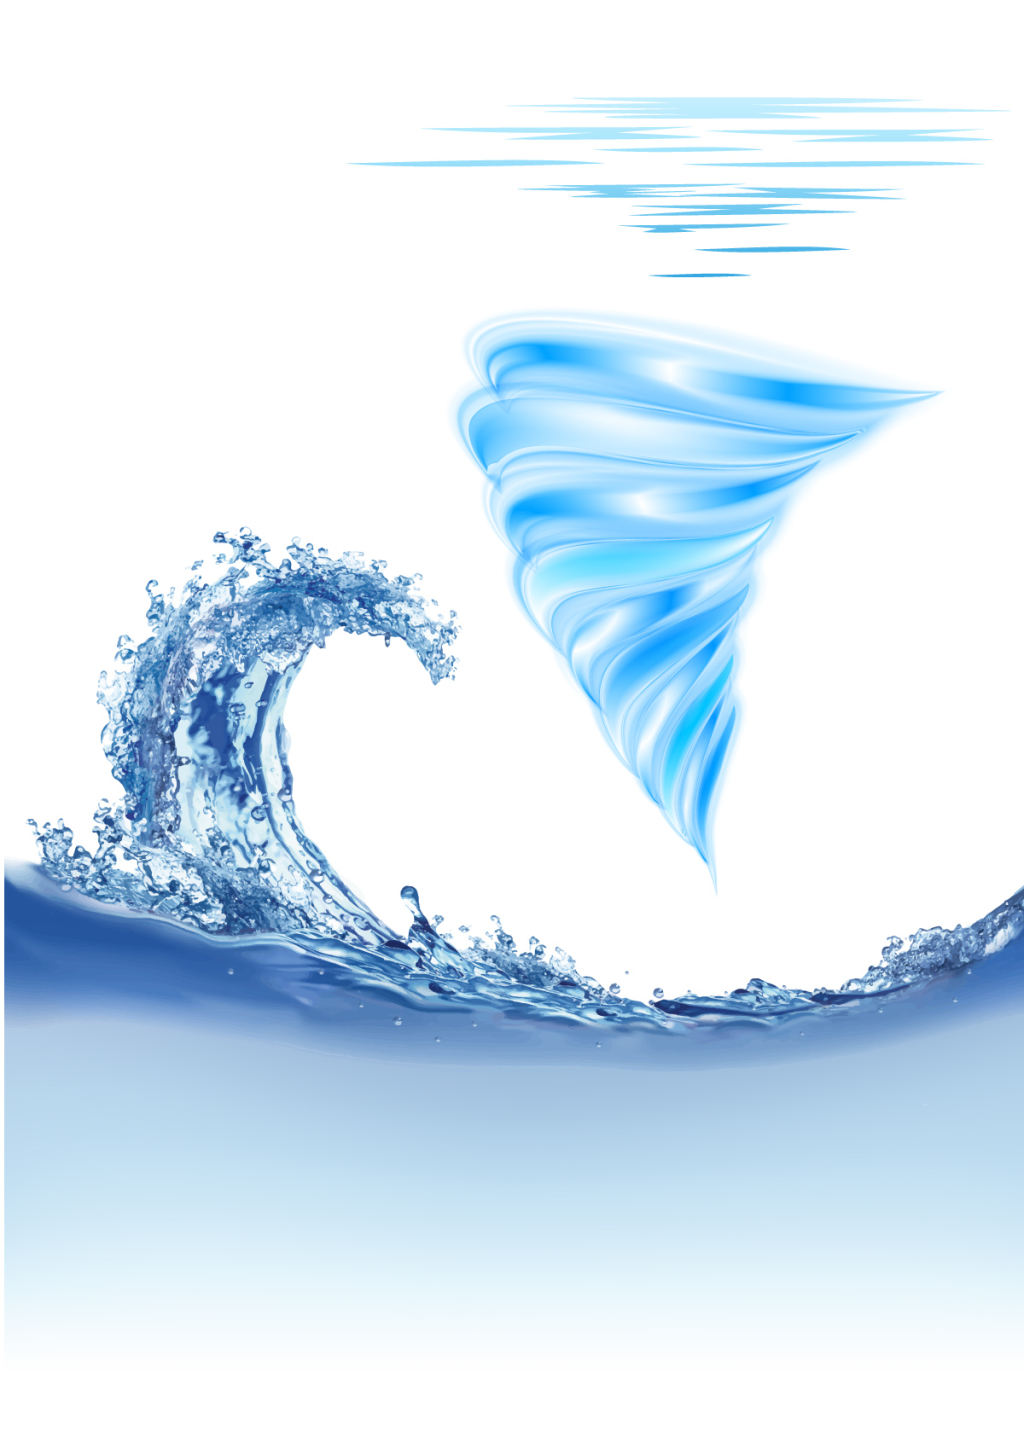 蓝色的海洋波浪图片下载 - 觅知网